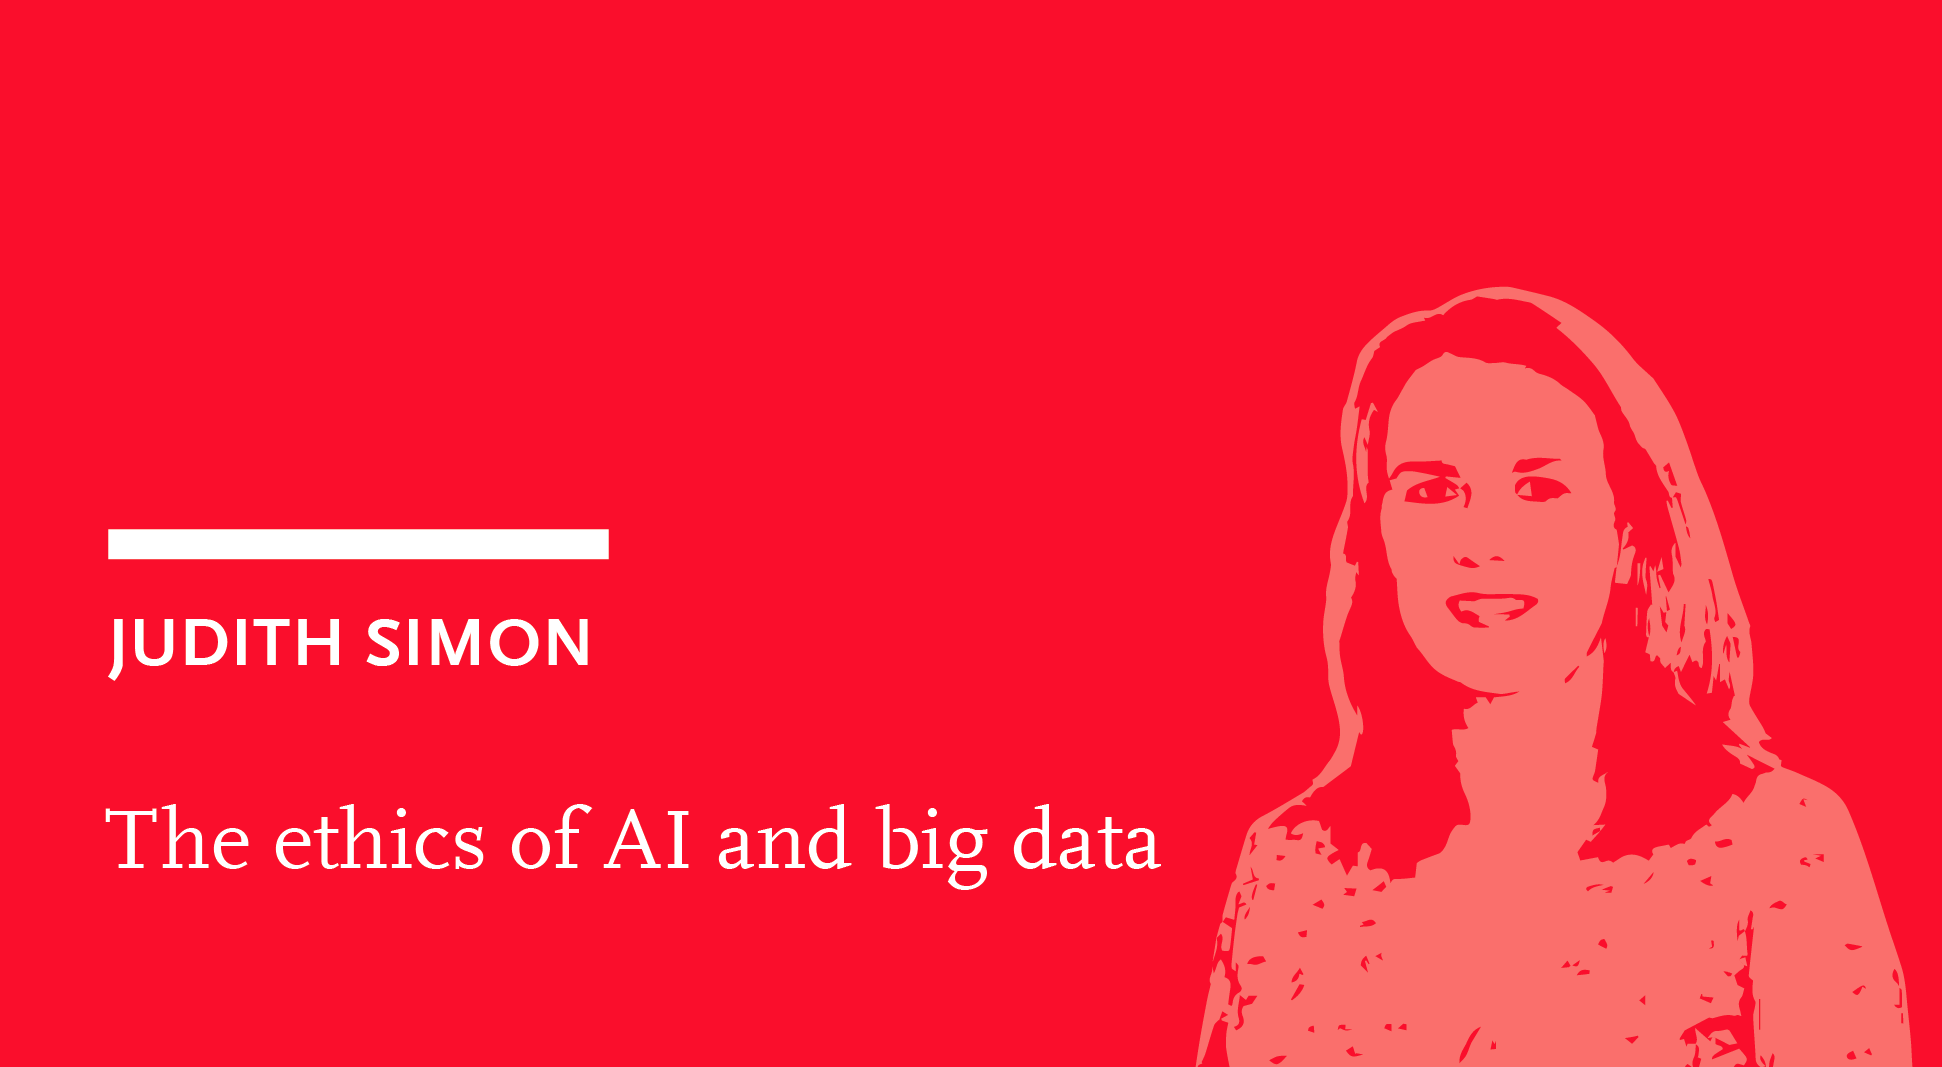 Judith Simon: The ethics of AI and big data